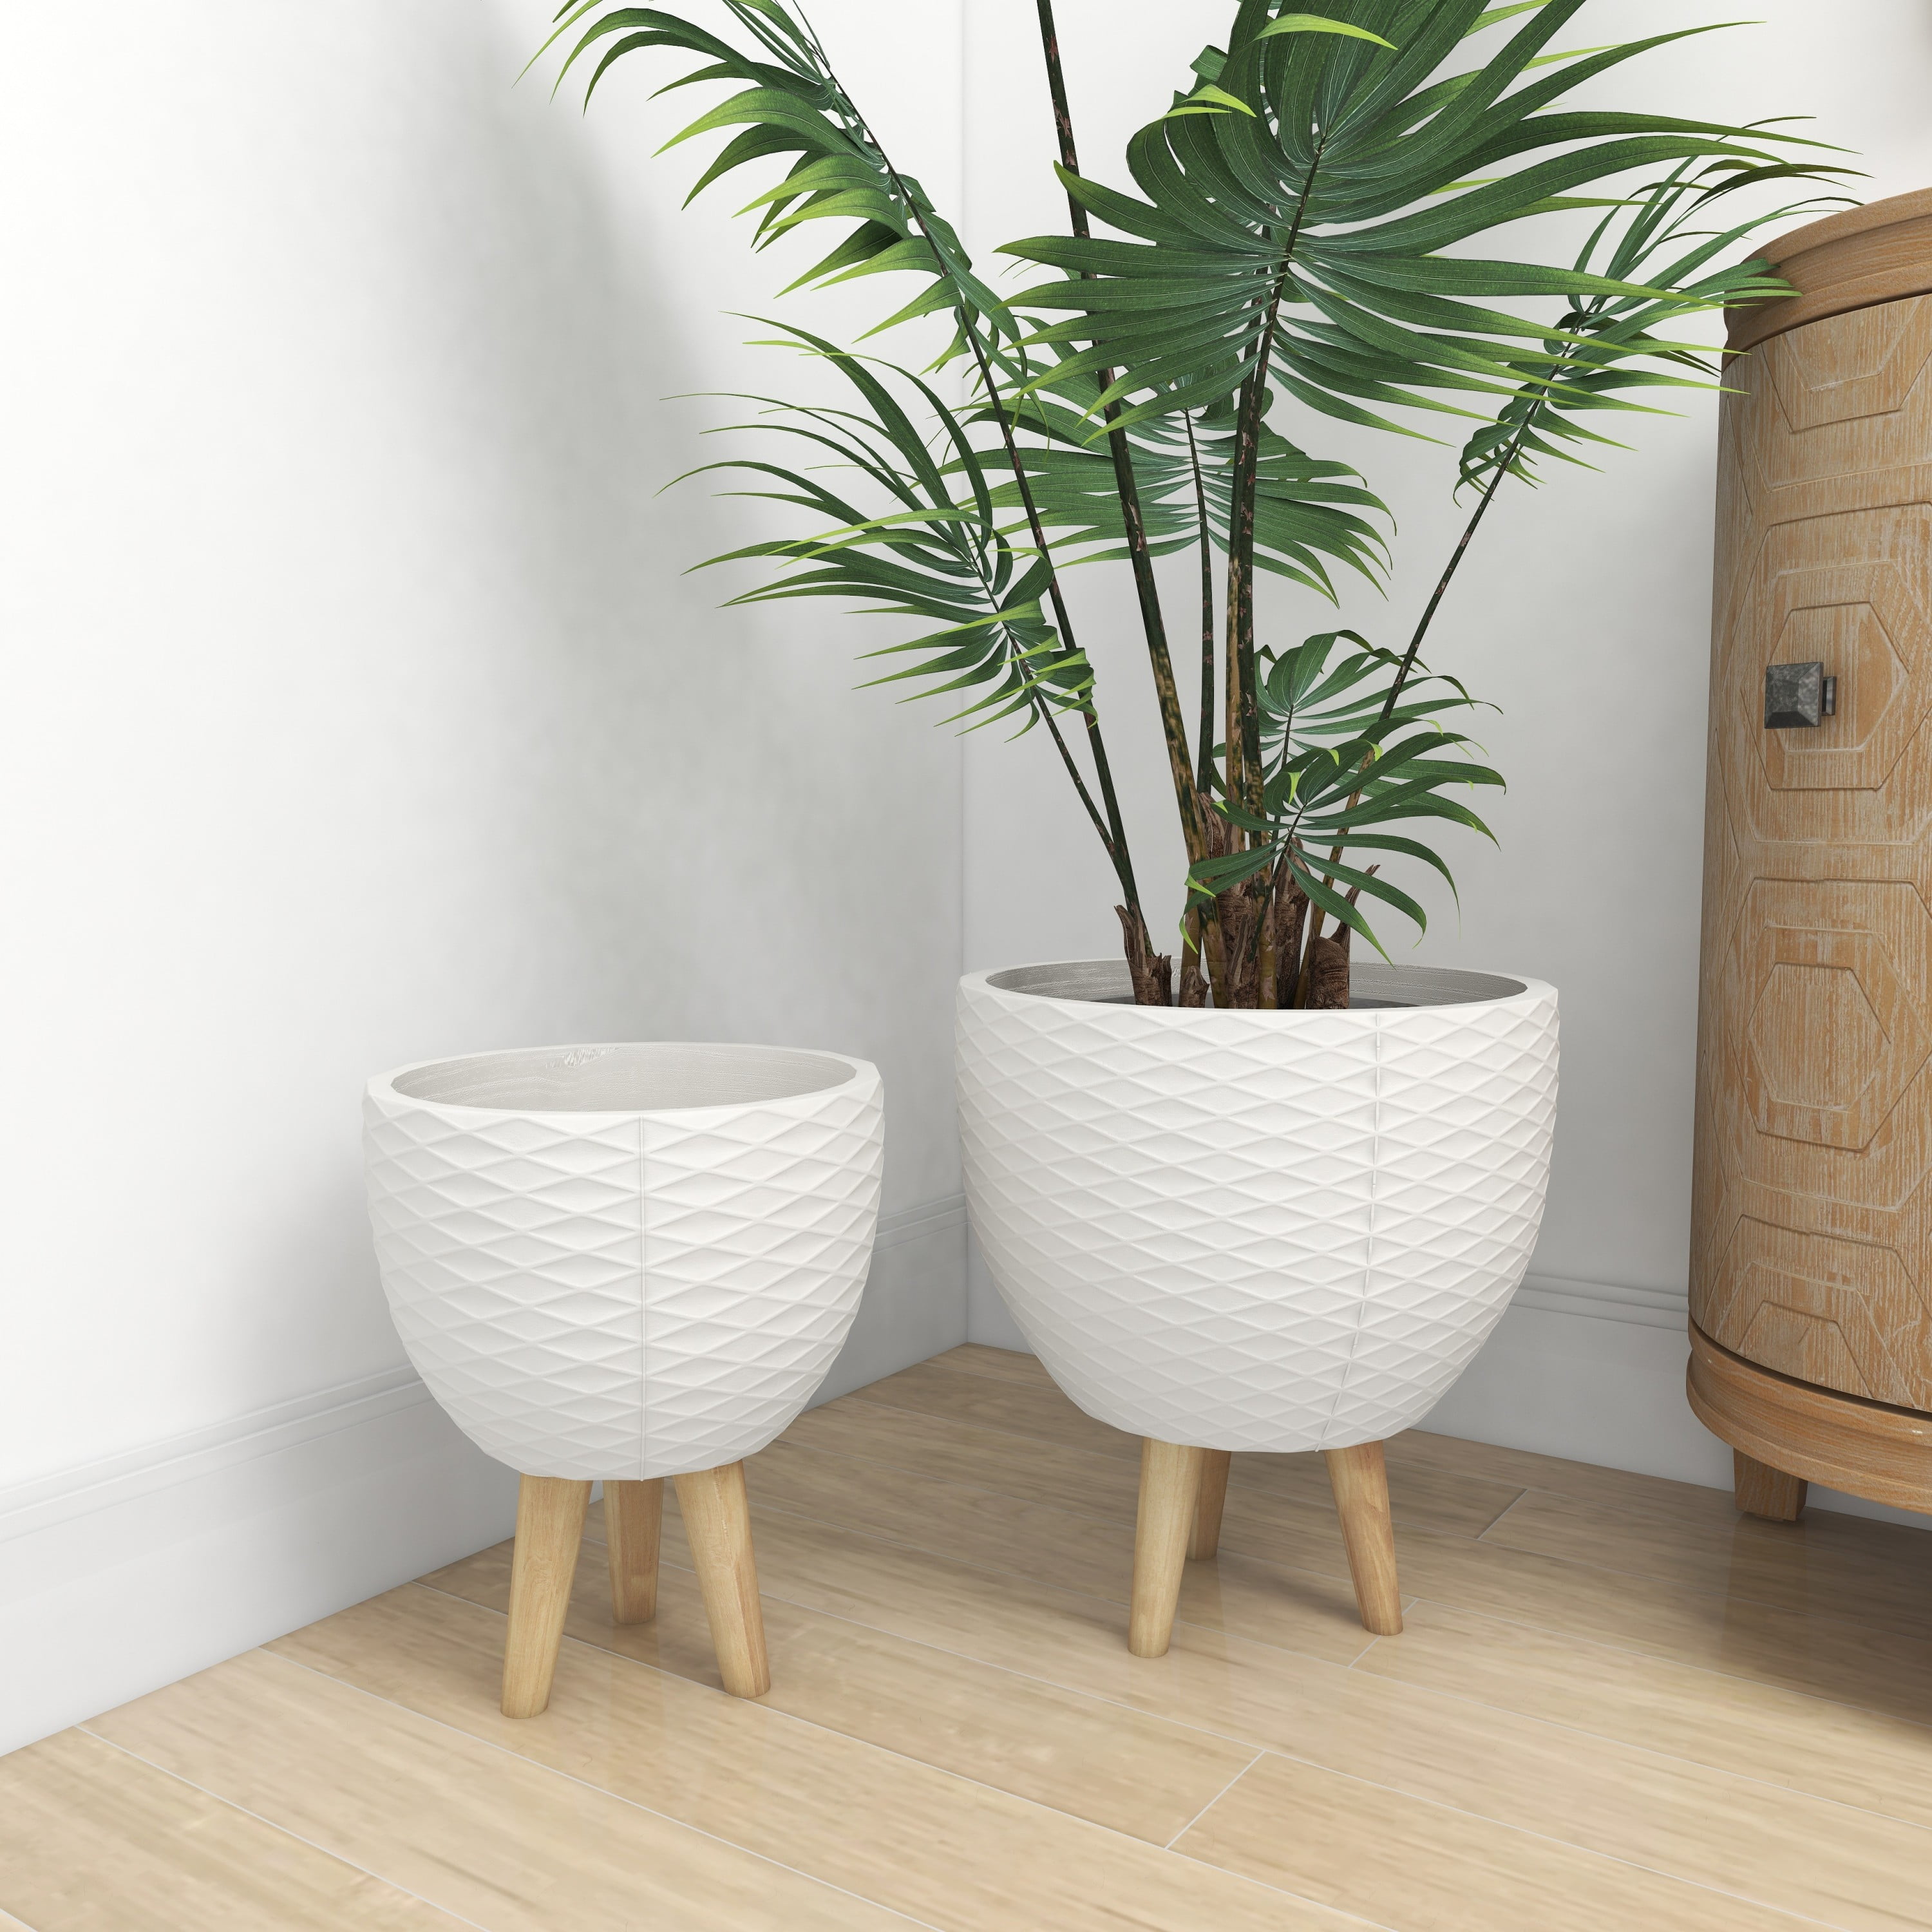 2 Pcs Mid Century Ceramic Plant Pots Indoor Decor White